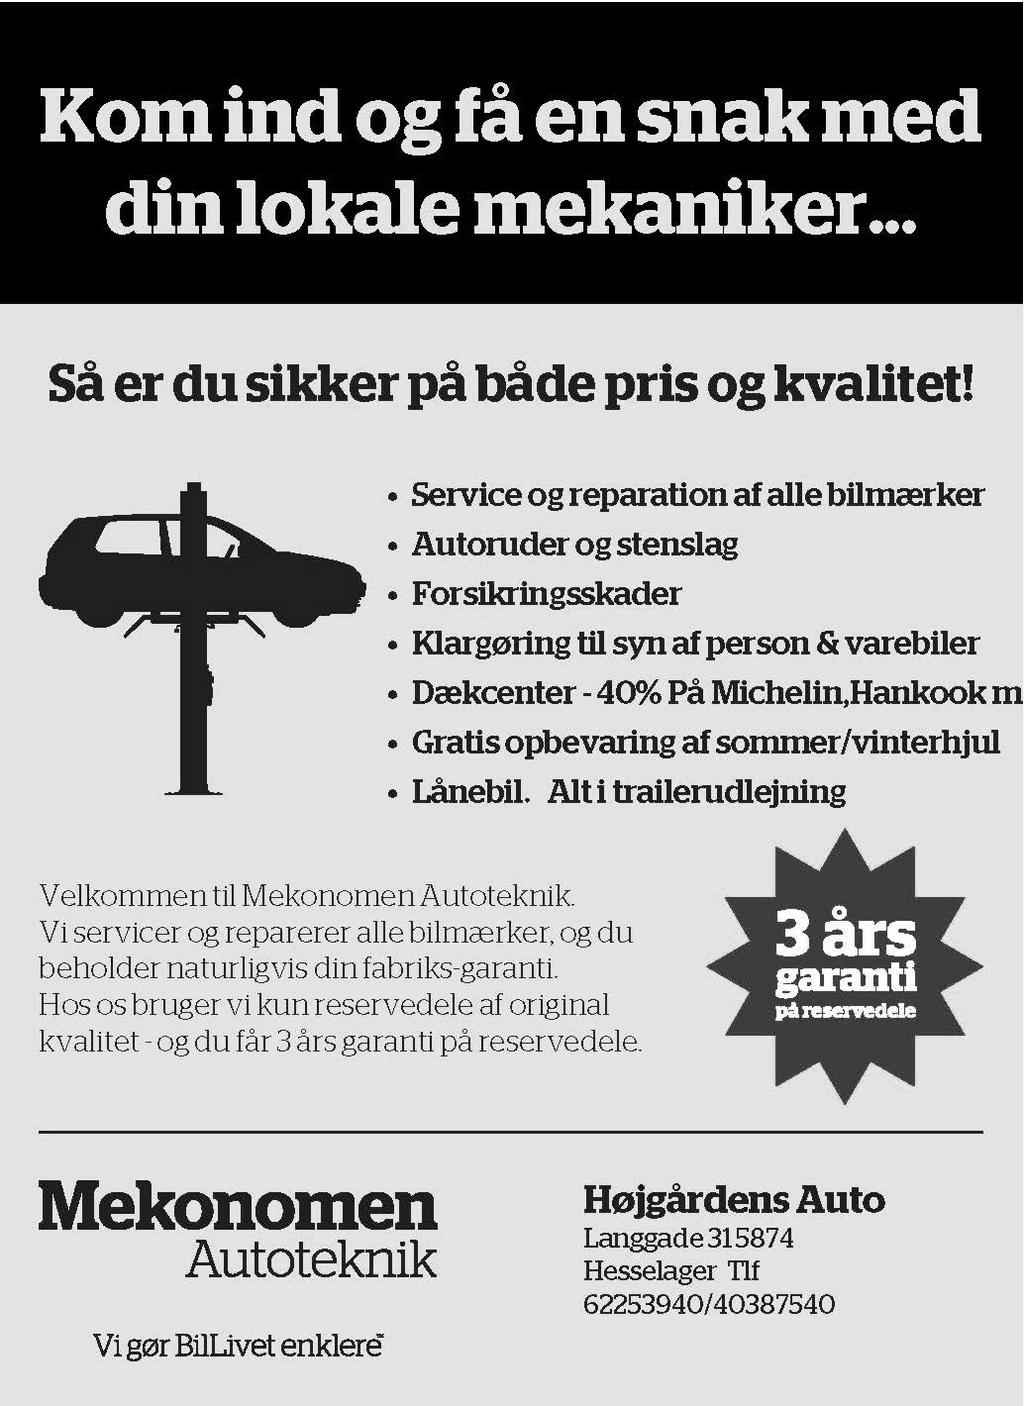 Velkommen til Højgårdens Auto. Vi servicer og reparerer alle bilmærker, og du beholder naturligvis din fabriks-garanti.